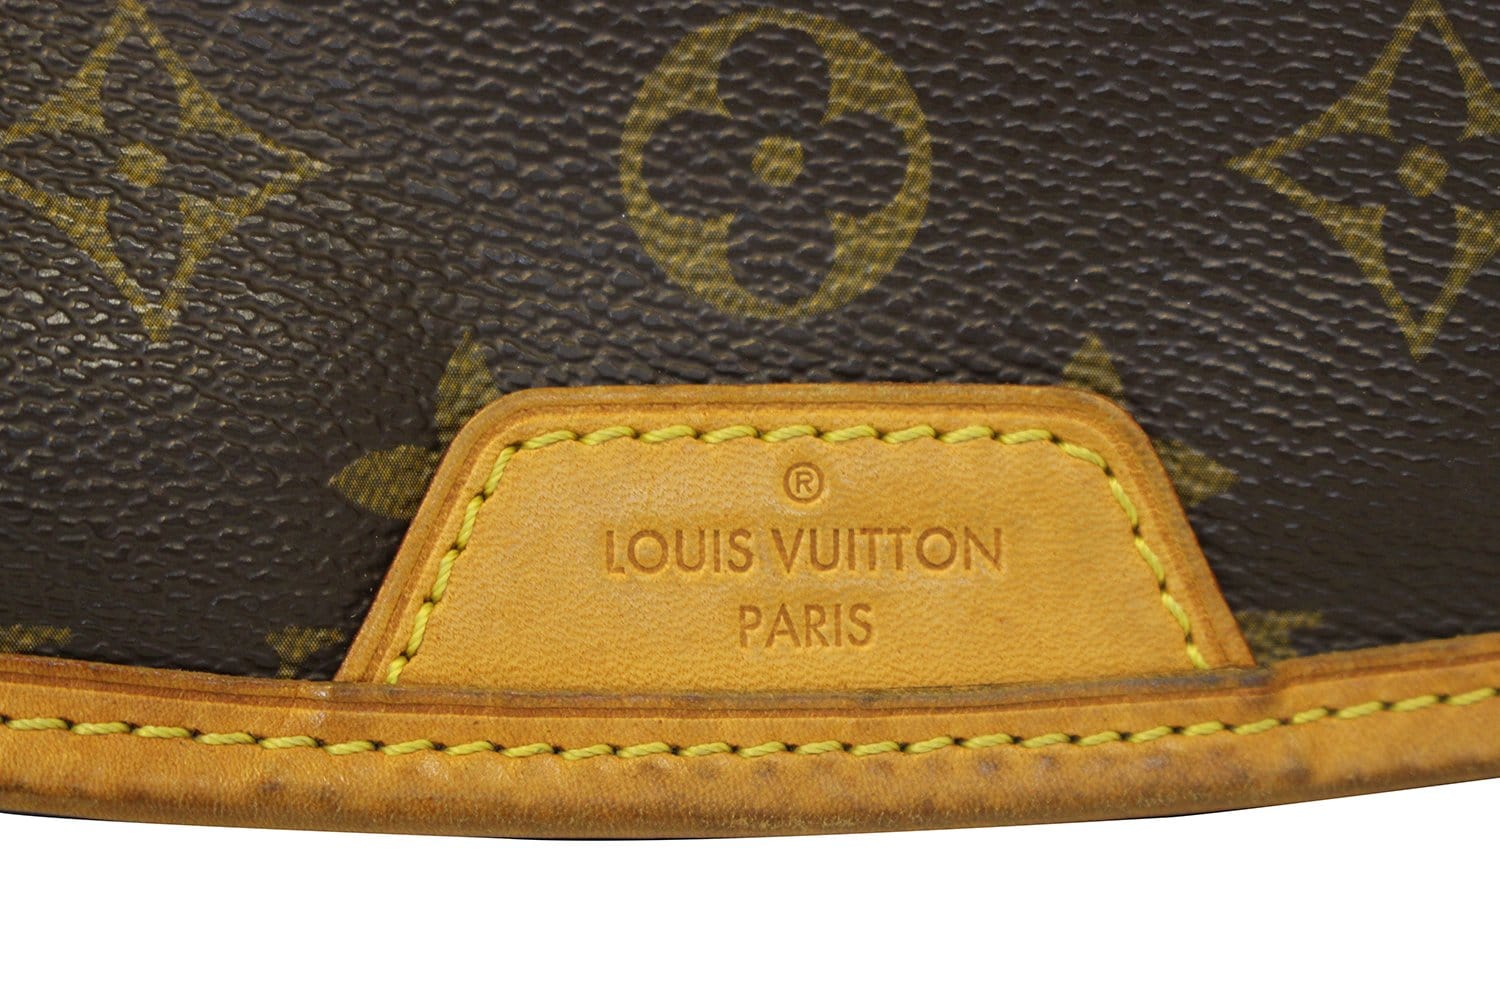 Super functional Louis Vuitton Menilmontant MM. love it. #lvoe #design